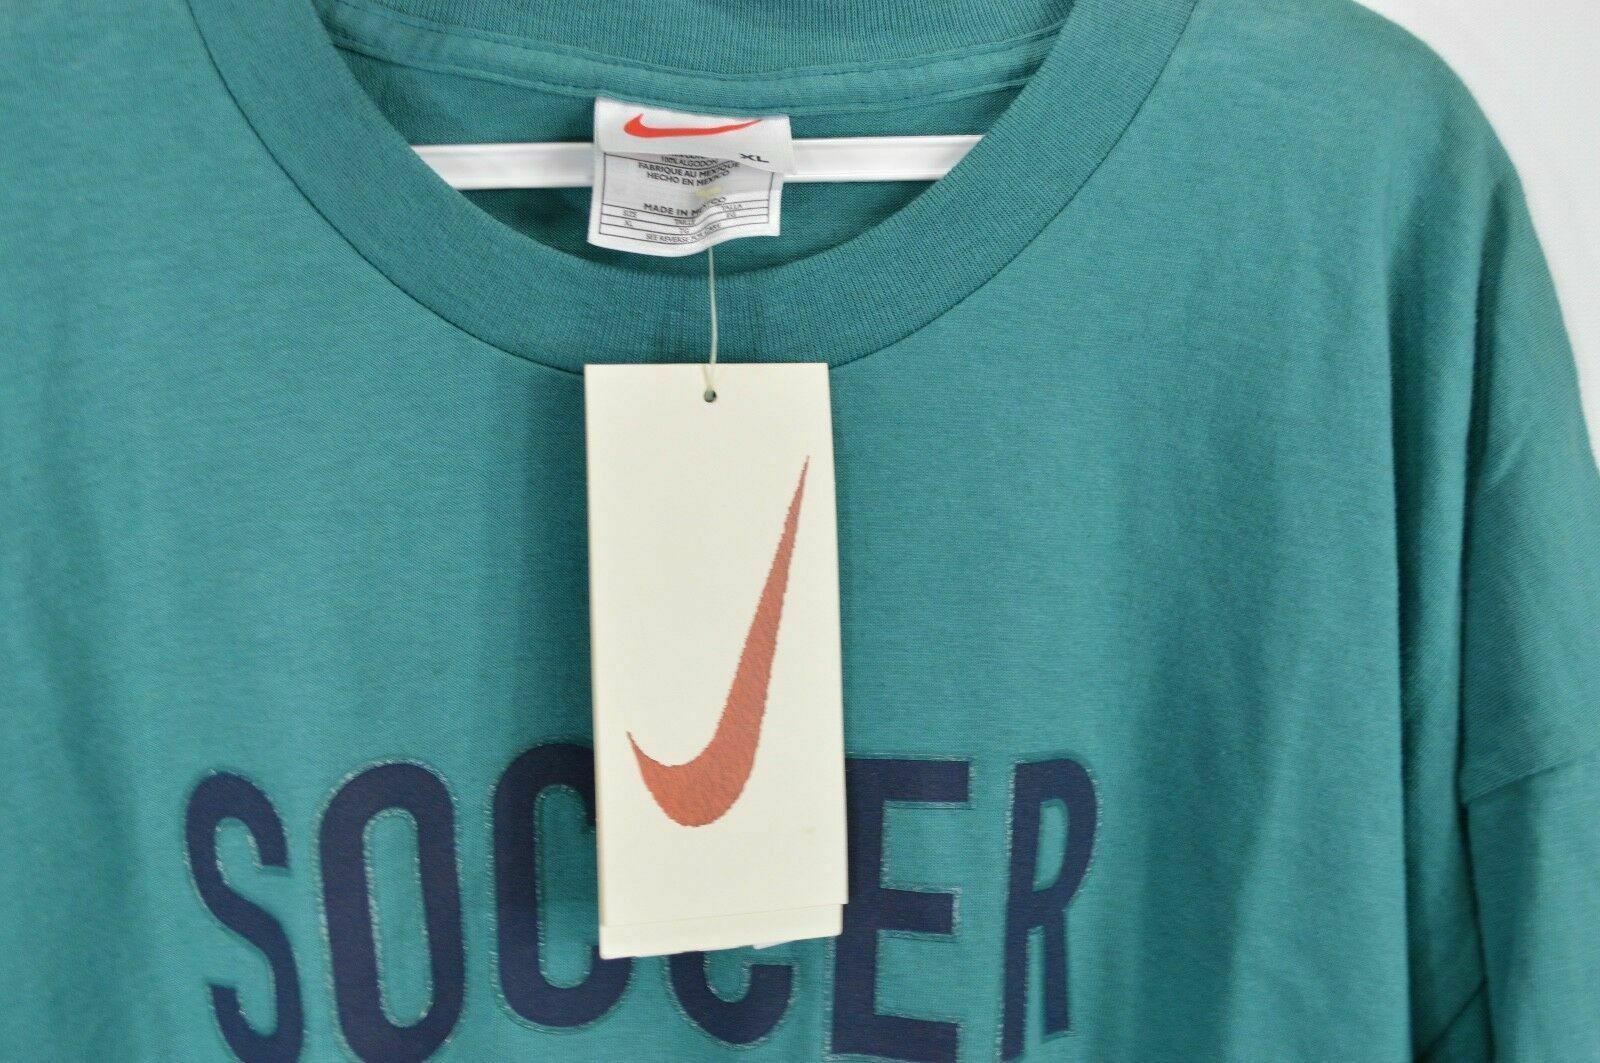 Nike NOS Vintage 90s Nike Soccer Travis Scott Mini Swoosh Shirt Size US XL / EU 56 / 4 - 4 Thumbnail